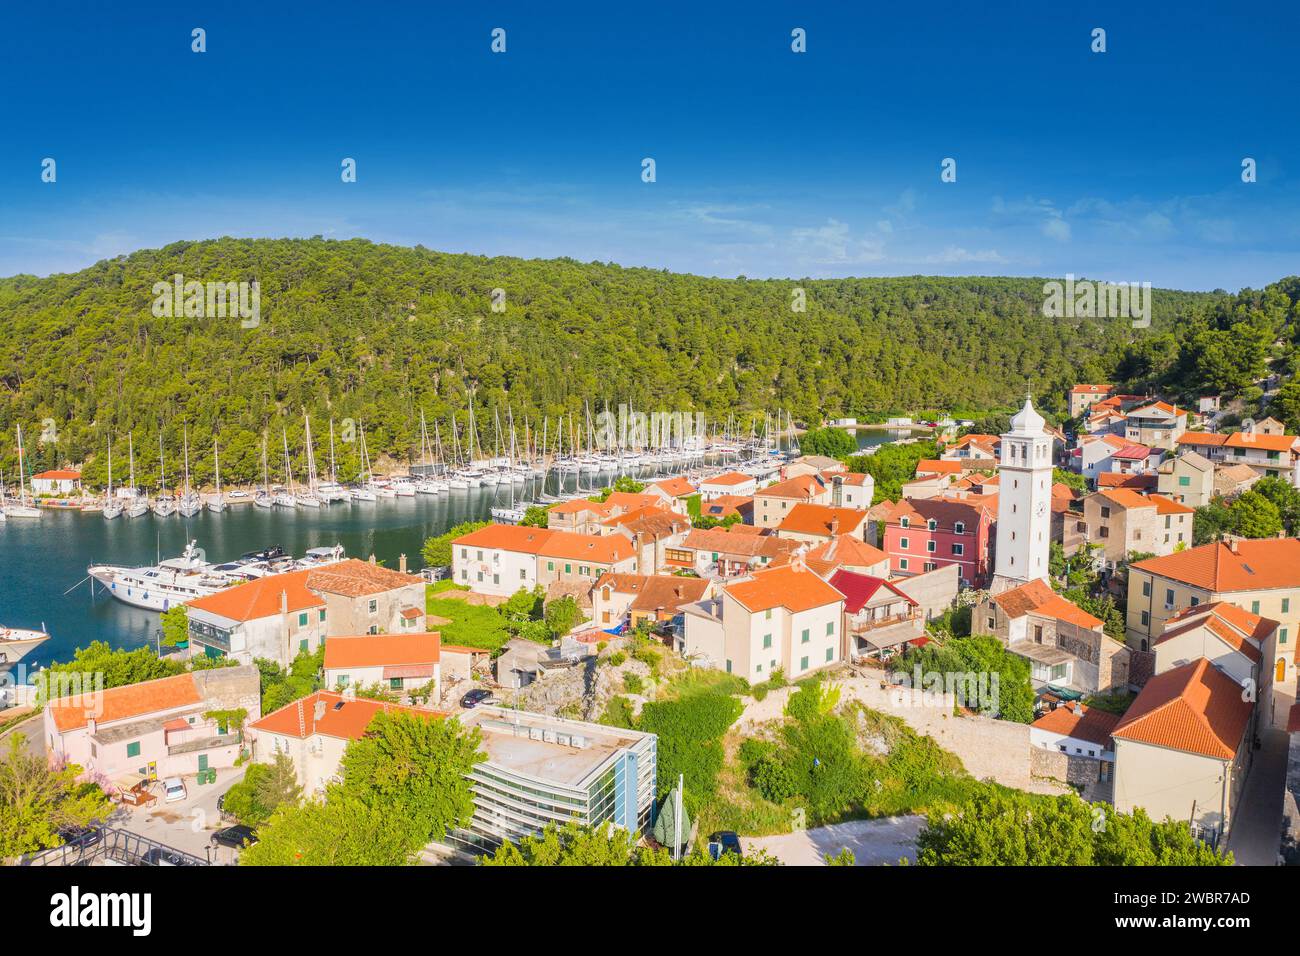 Vue aérienne de la ville de Skradin en Dalmatie, Croatie Banque D'Images